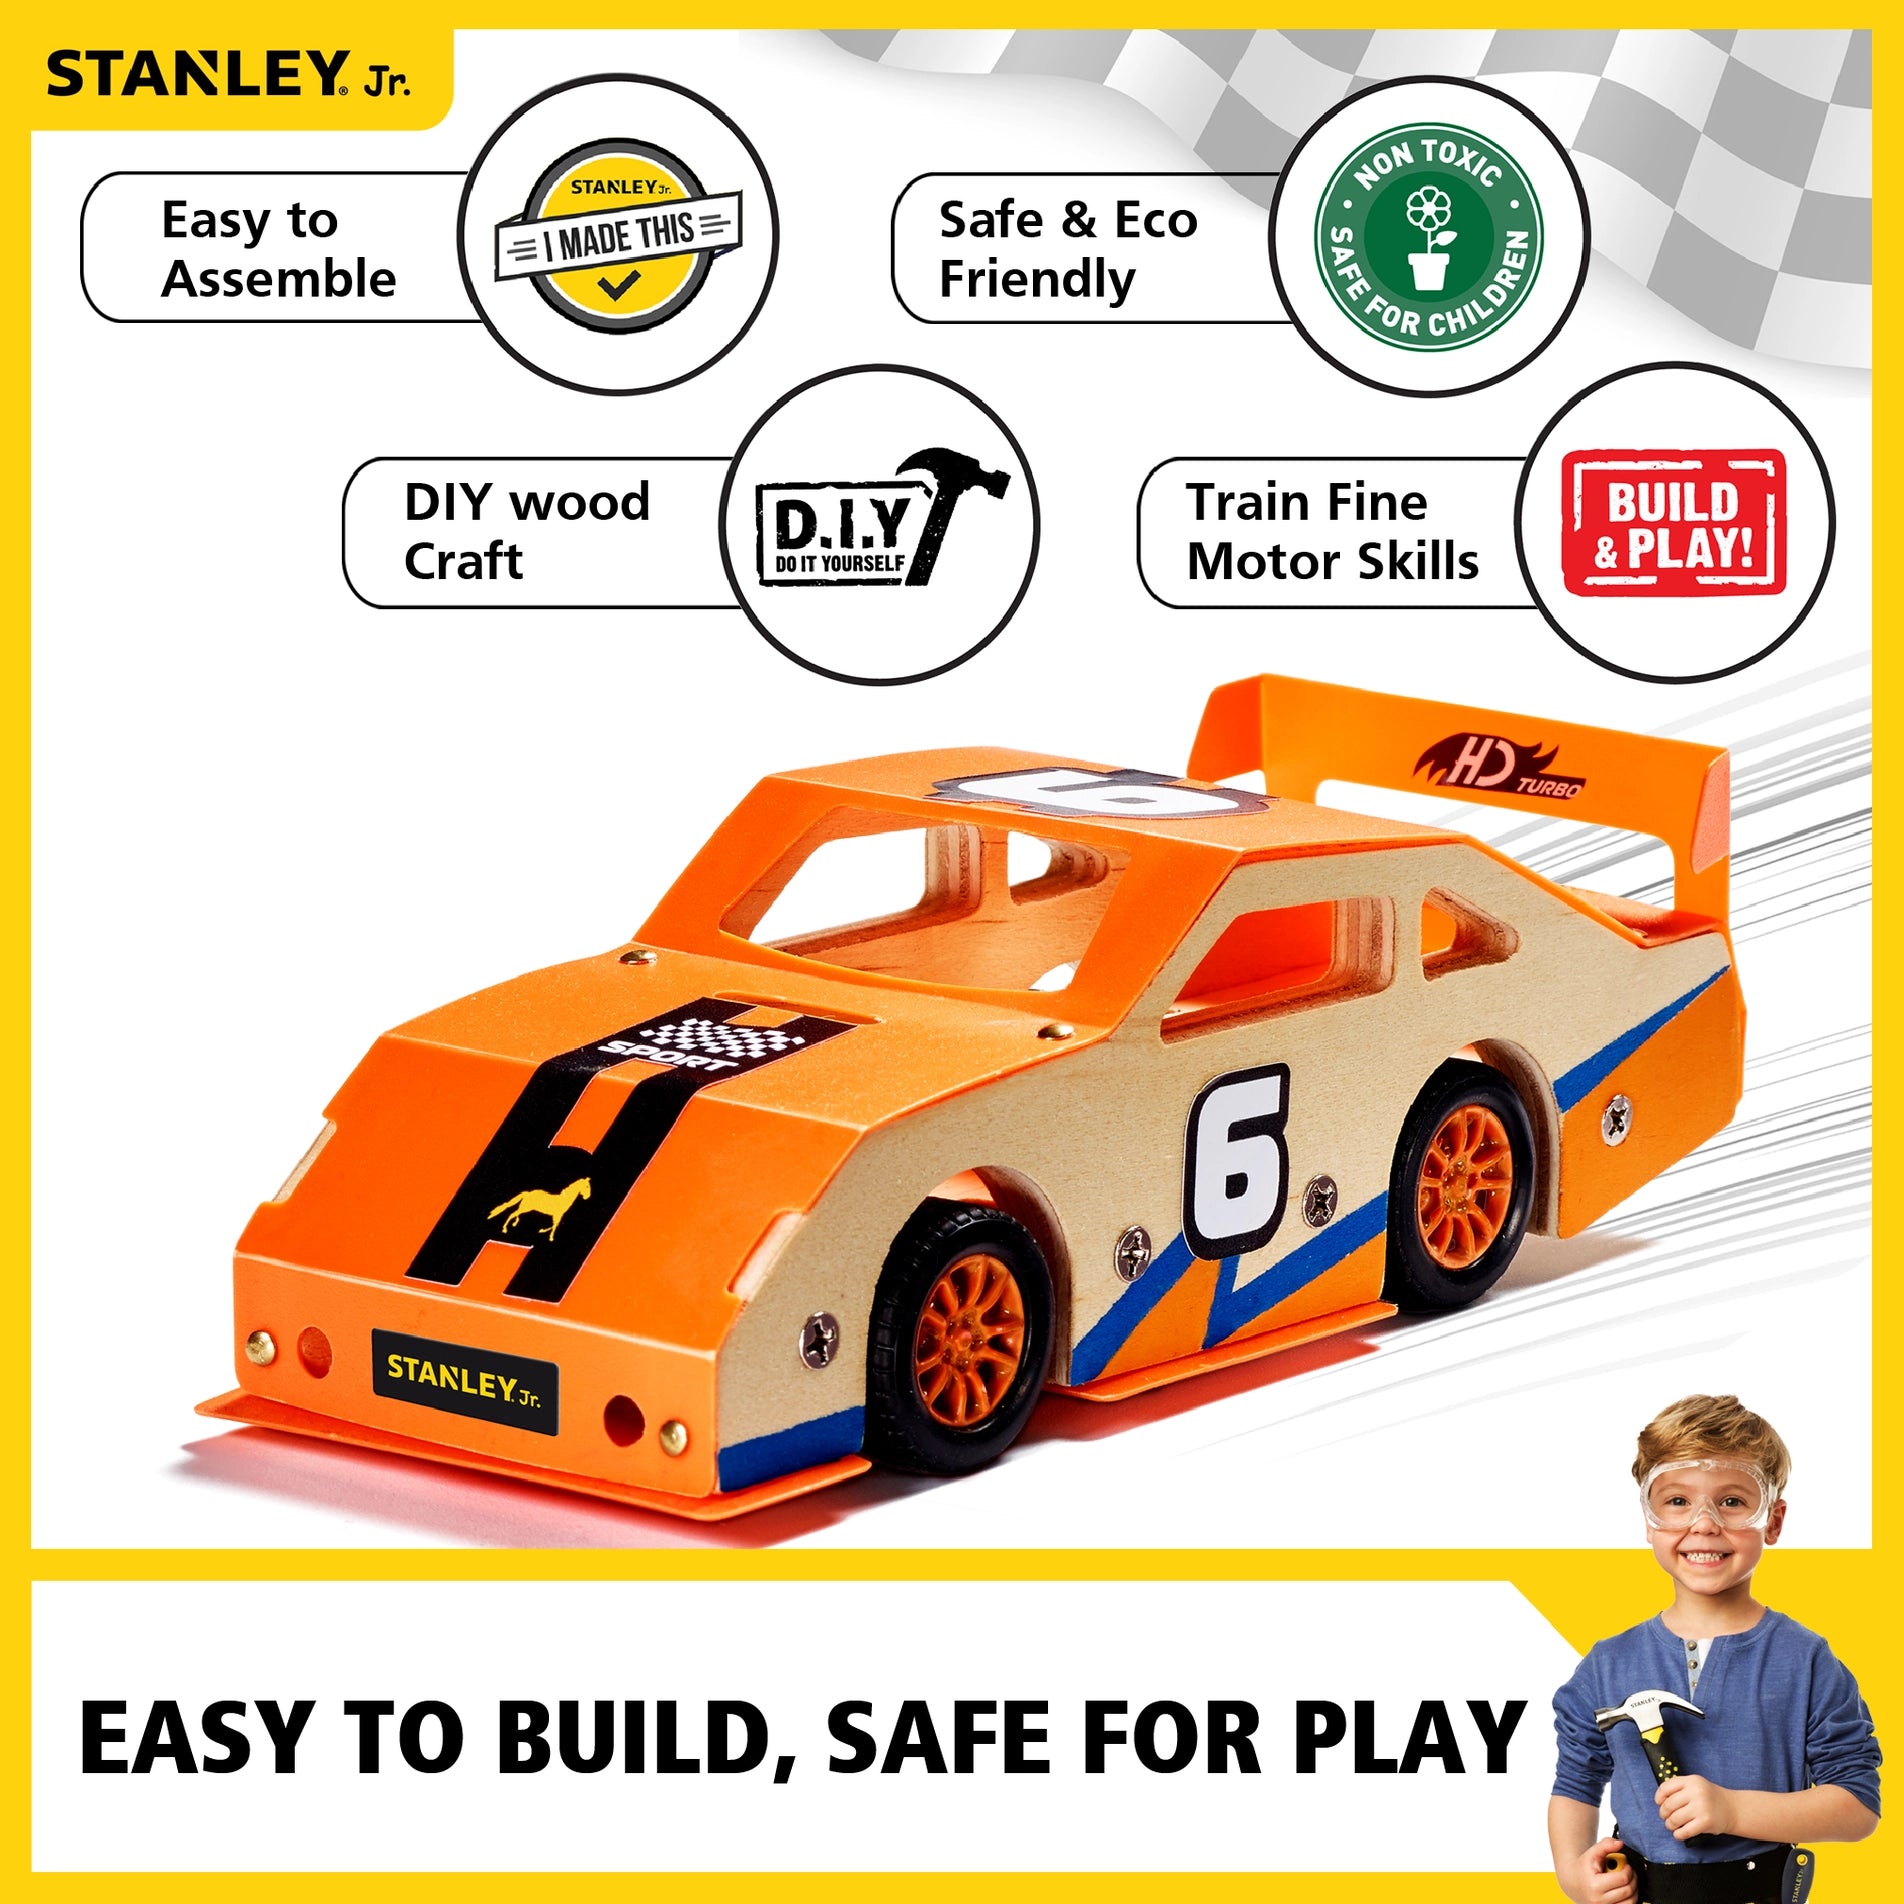 Race Car Build and Paint Kit